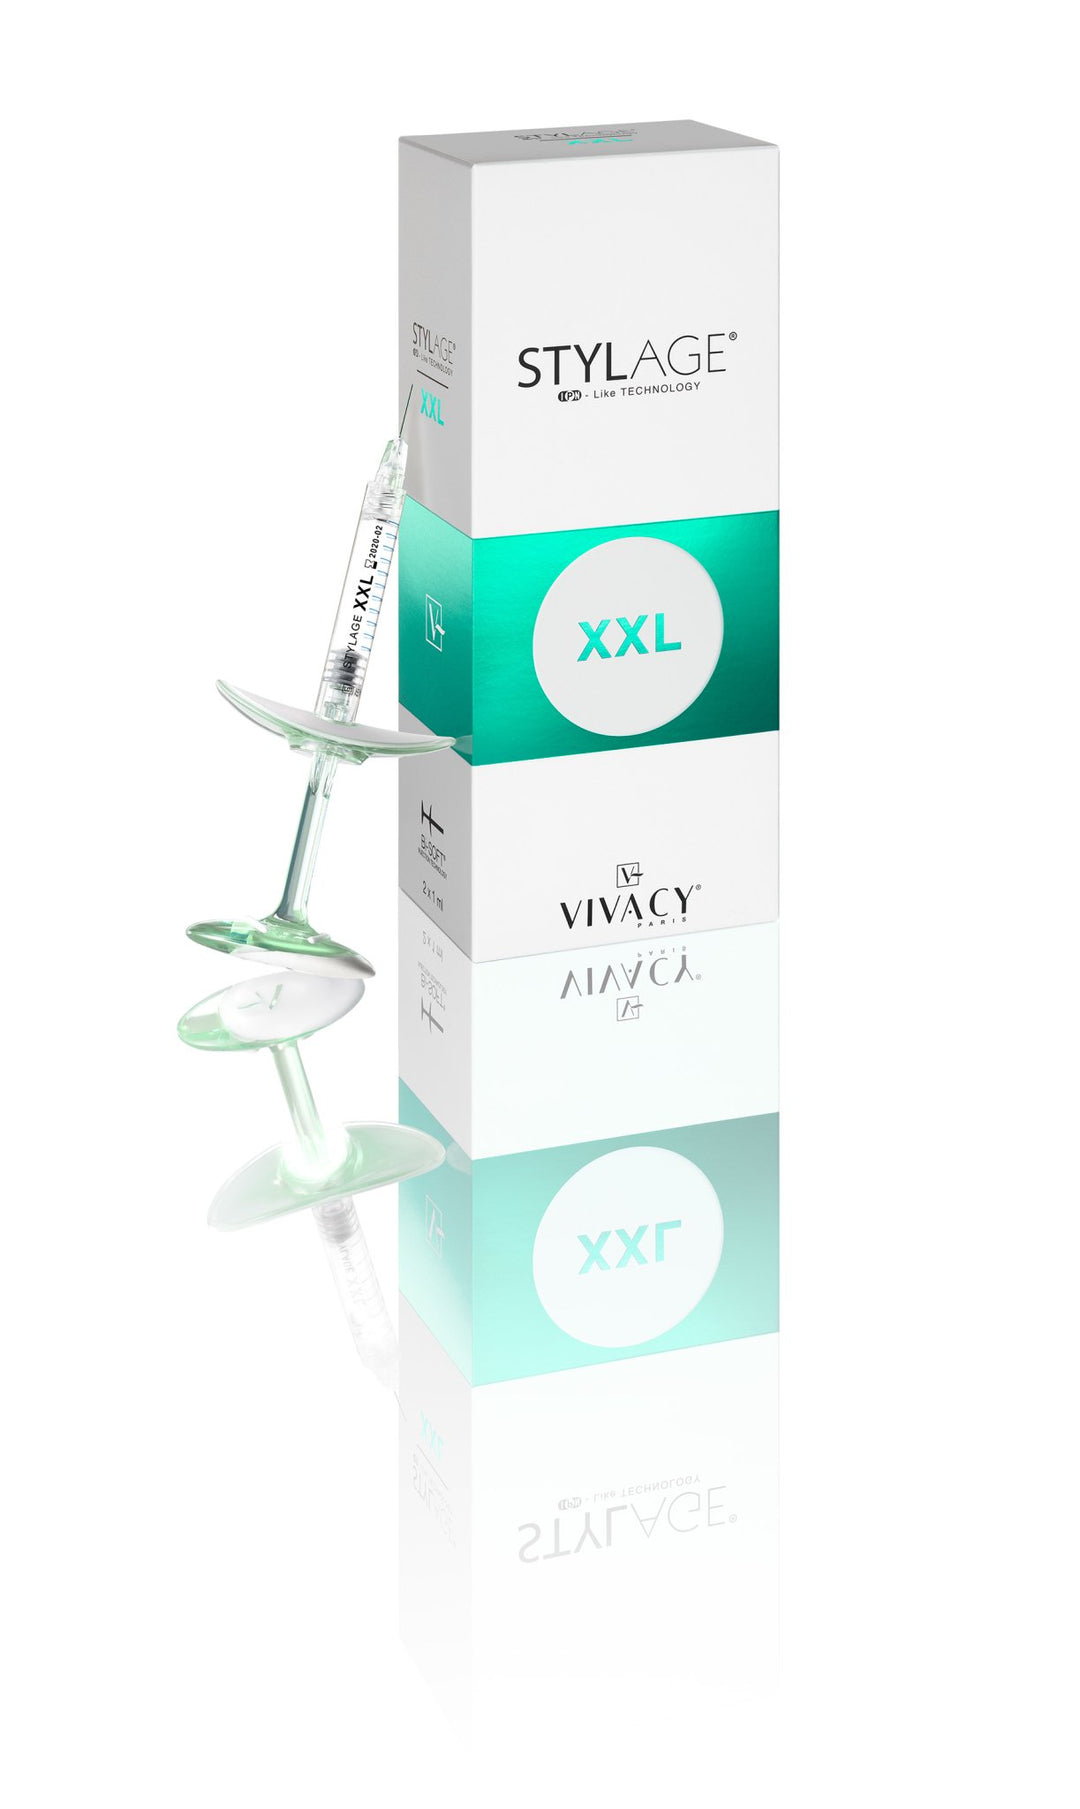 Vivacy - Stylage XXL Bi-Soft 2 x 1ml - DANYCARE